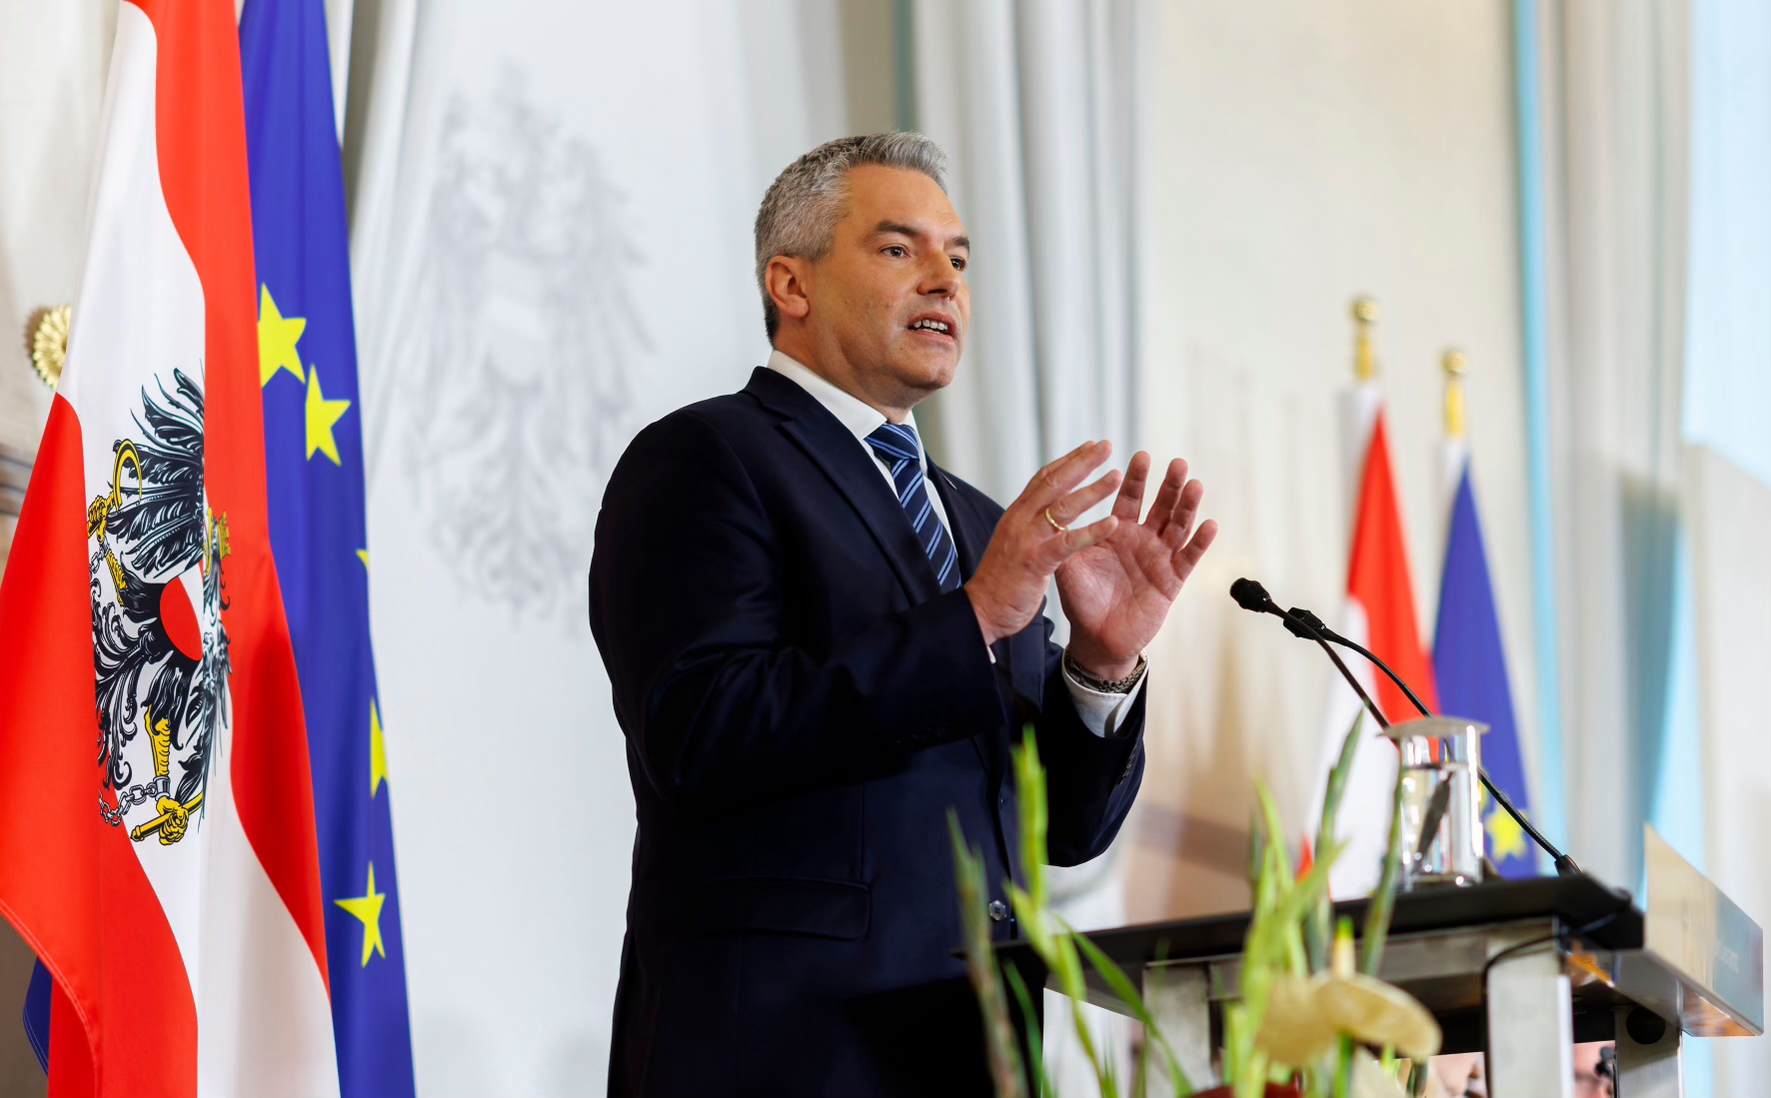 Nach Ungarn lehnt auch Österreich ein Schnellverfahren für den EU-Beitritt der Ukraine ab